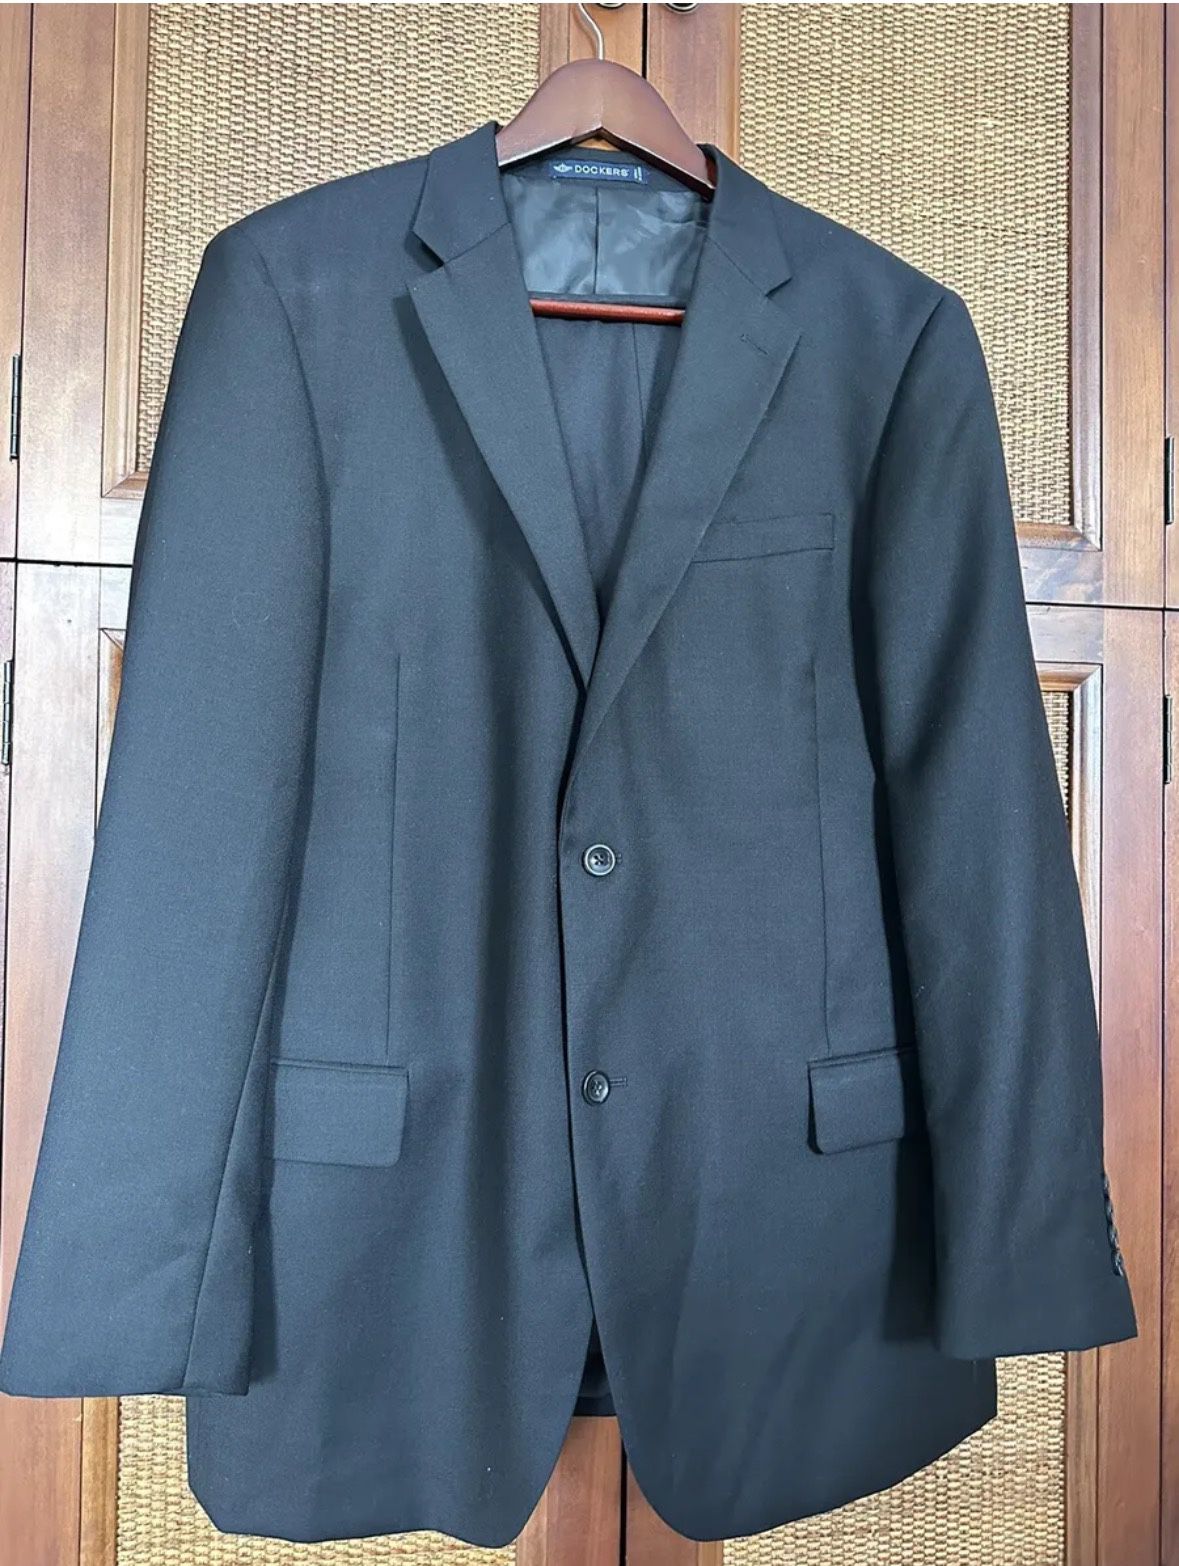 Men's Black Suit. Dockers Wool Poly 44 L Coat Jacket +Louis